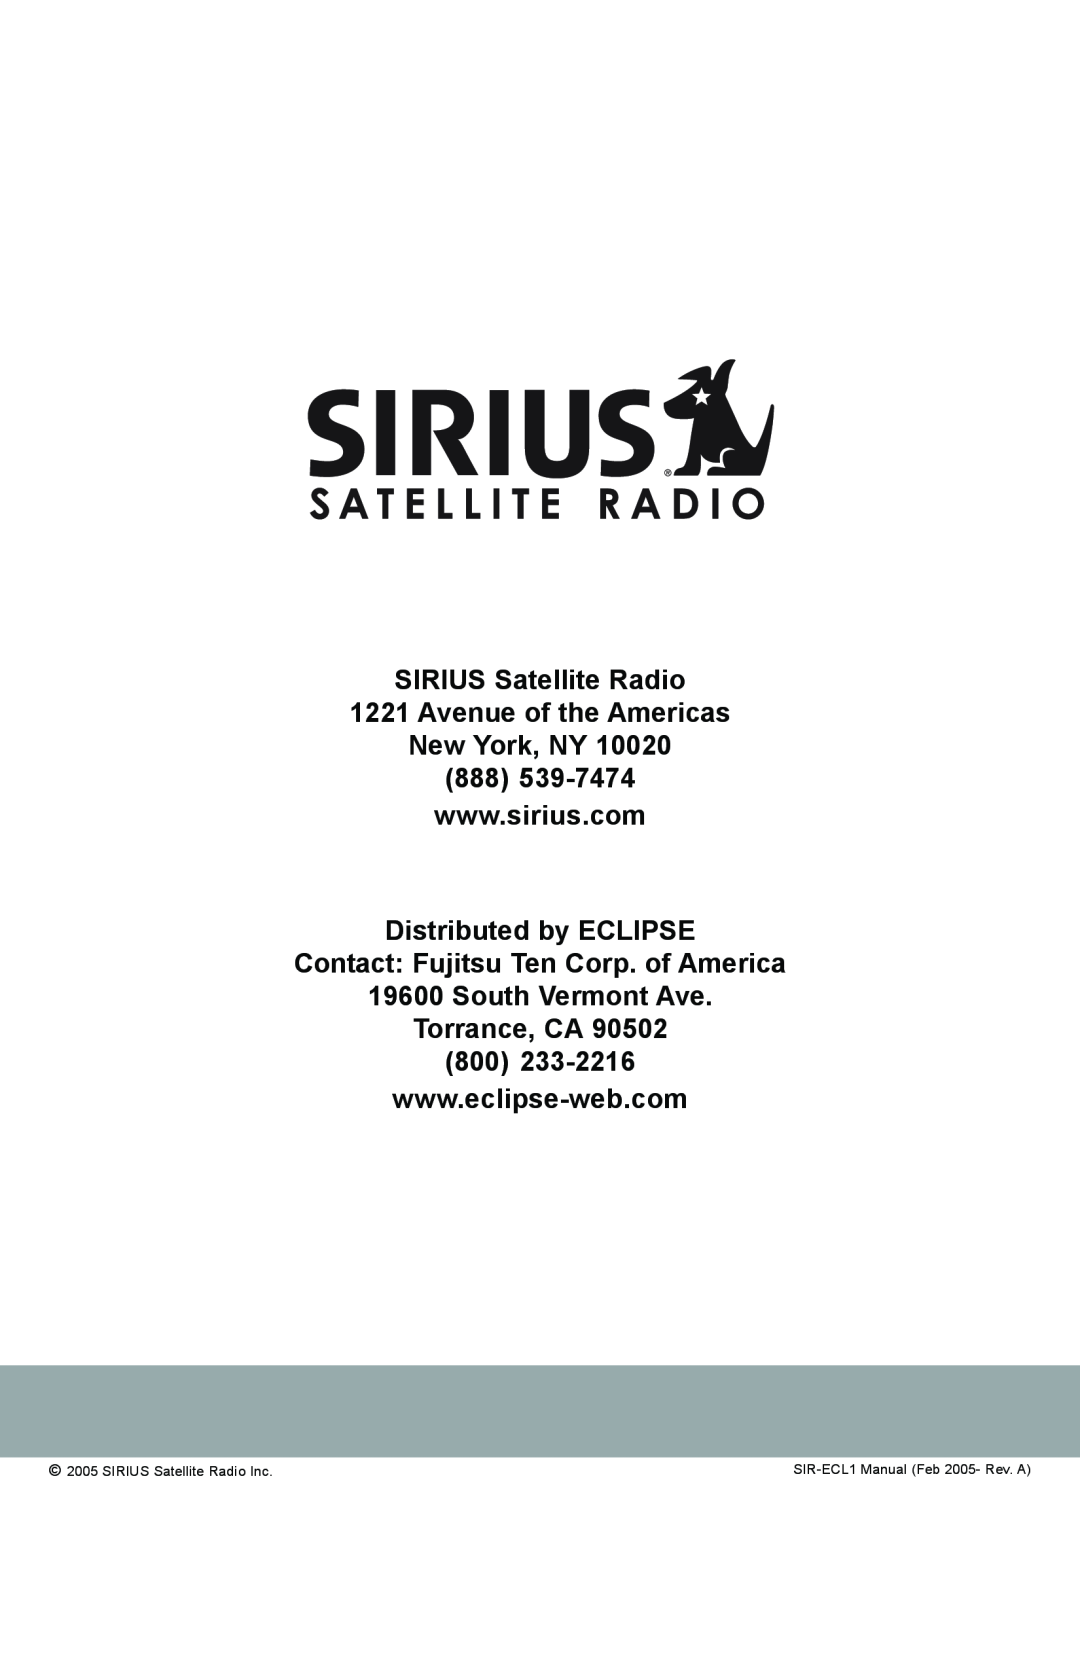 Sirius Satellite Radio SIR-ECL1 manual Avenue of the Americas New York, NY, SIRIUS Satellite Radio Inc 